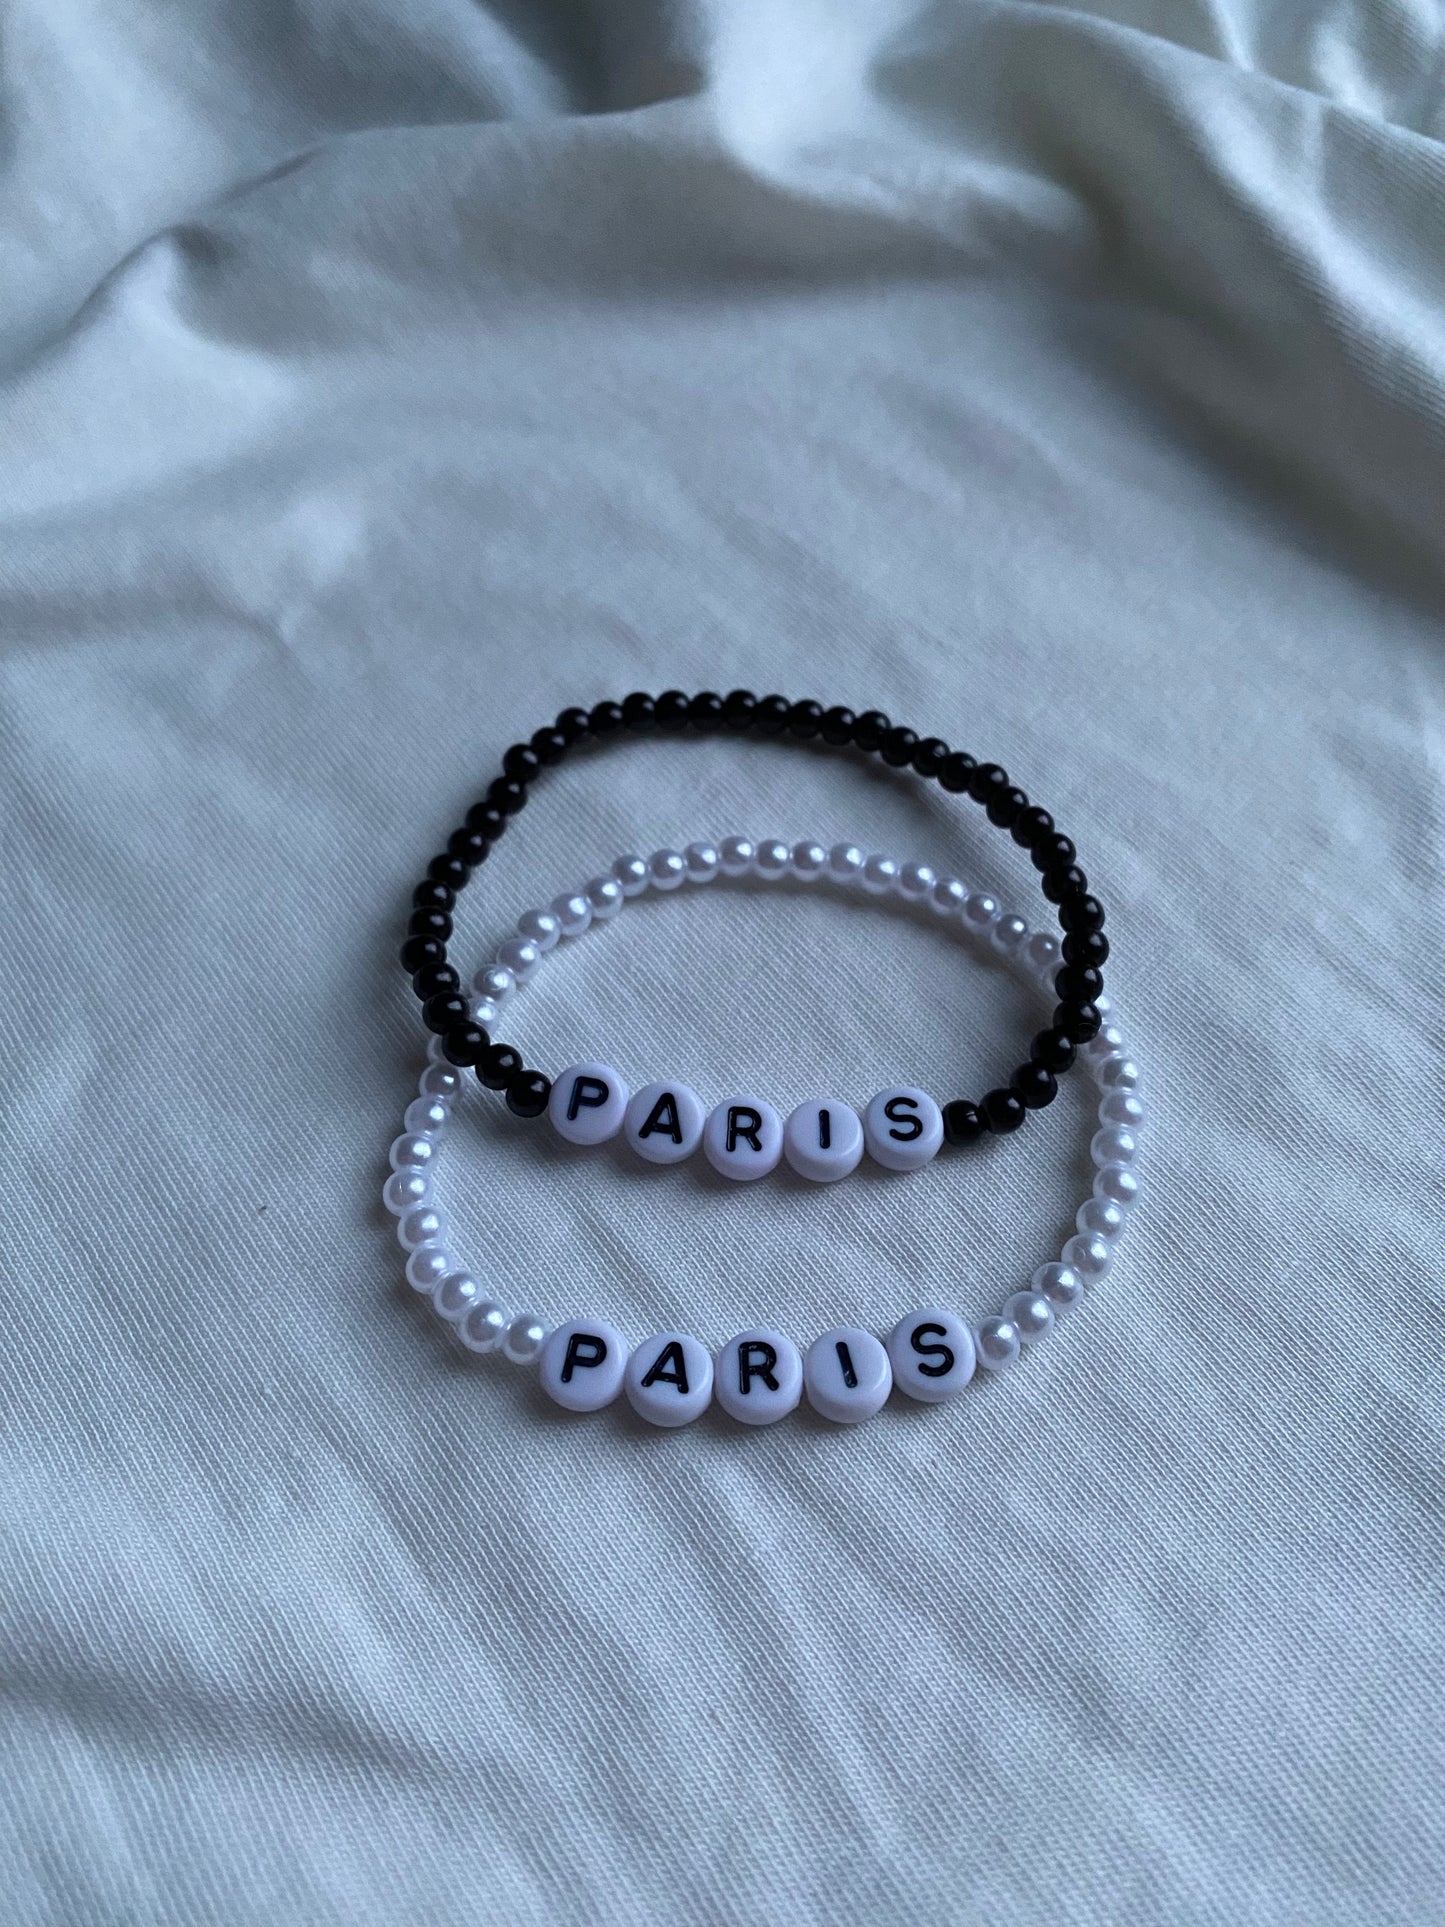 Paris matching bracelets